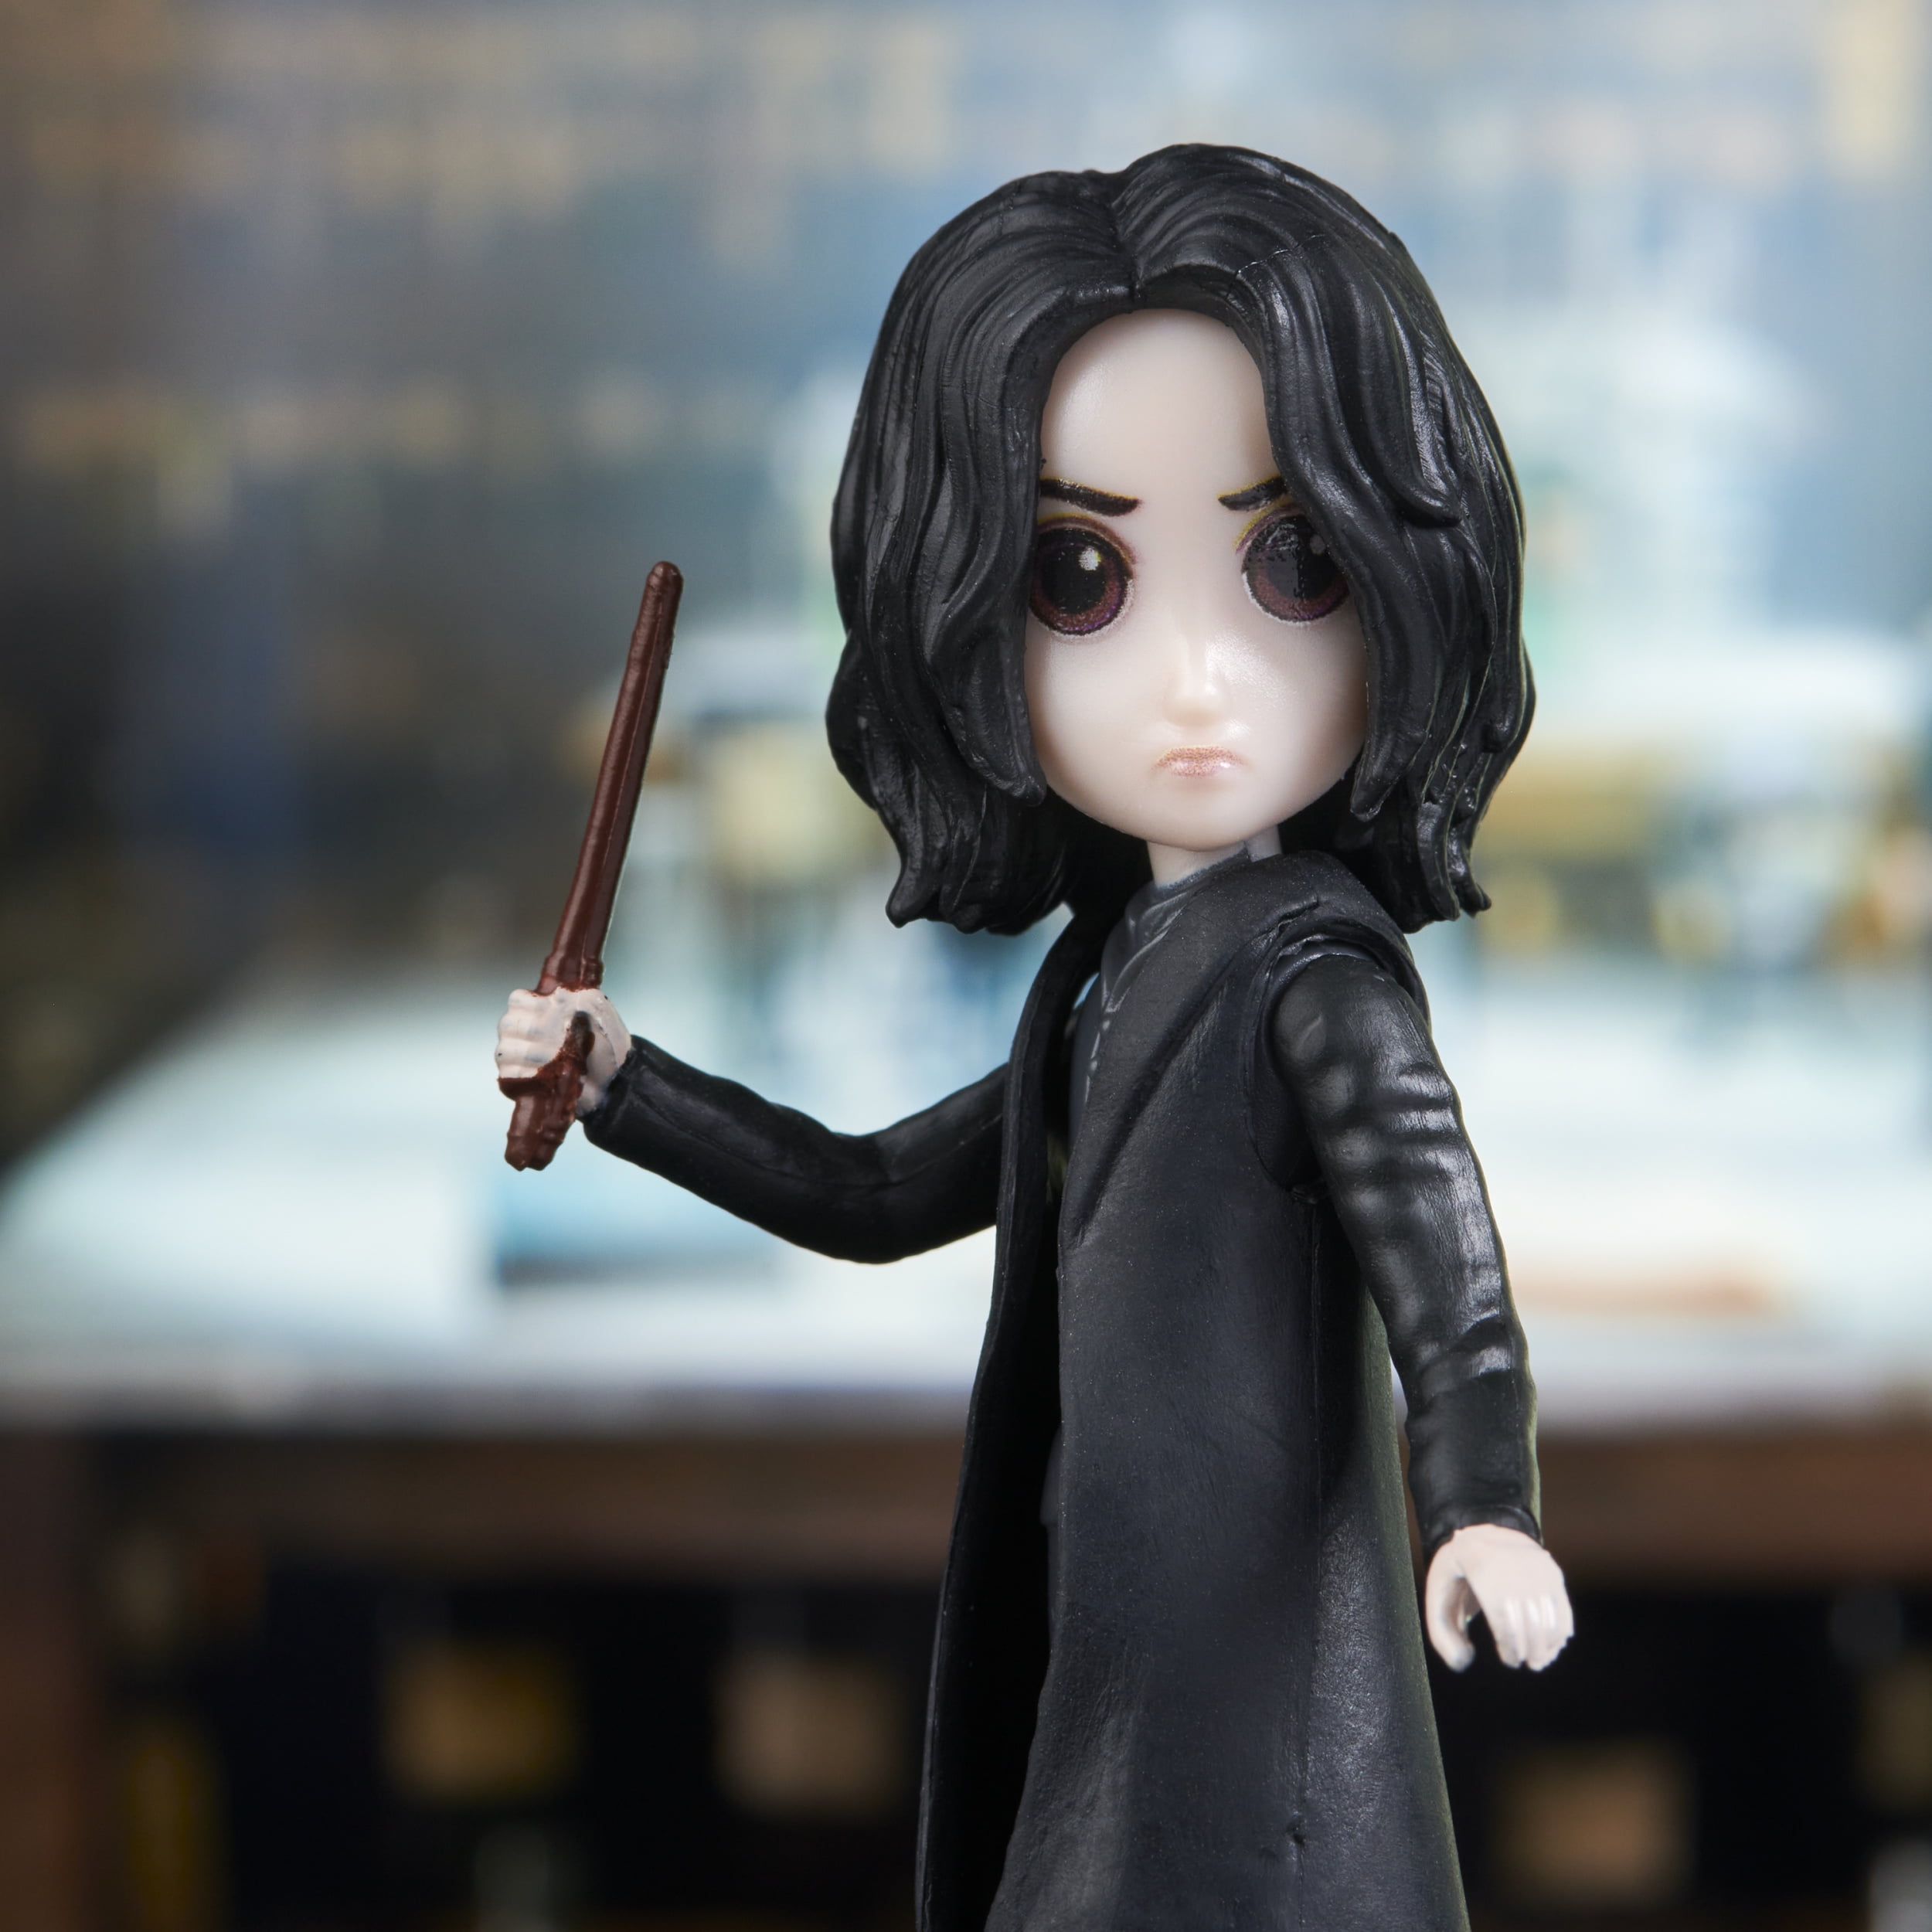 SD Toys Harry Potter Wizarding World Minifigures - Mini Snape au meilleur  prix sur